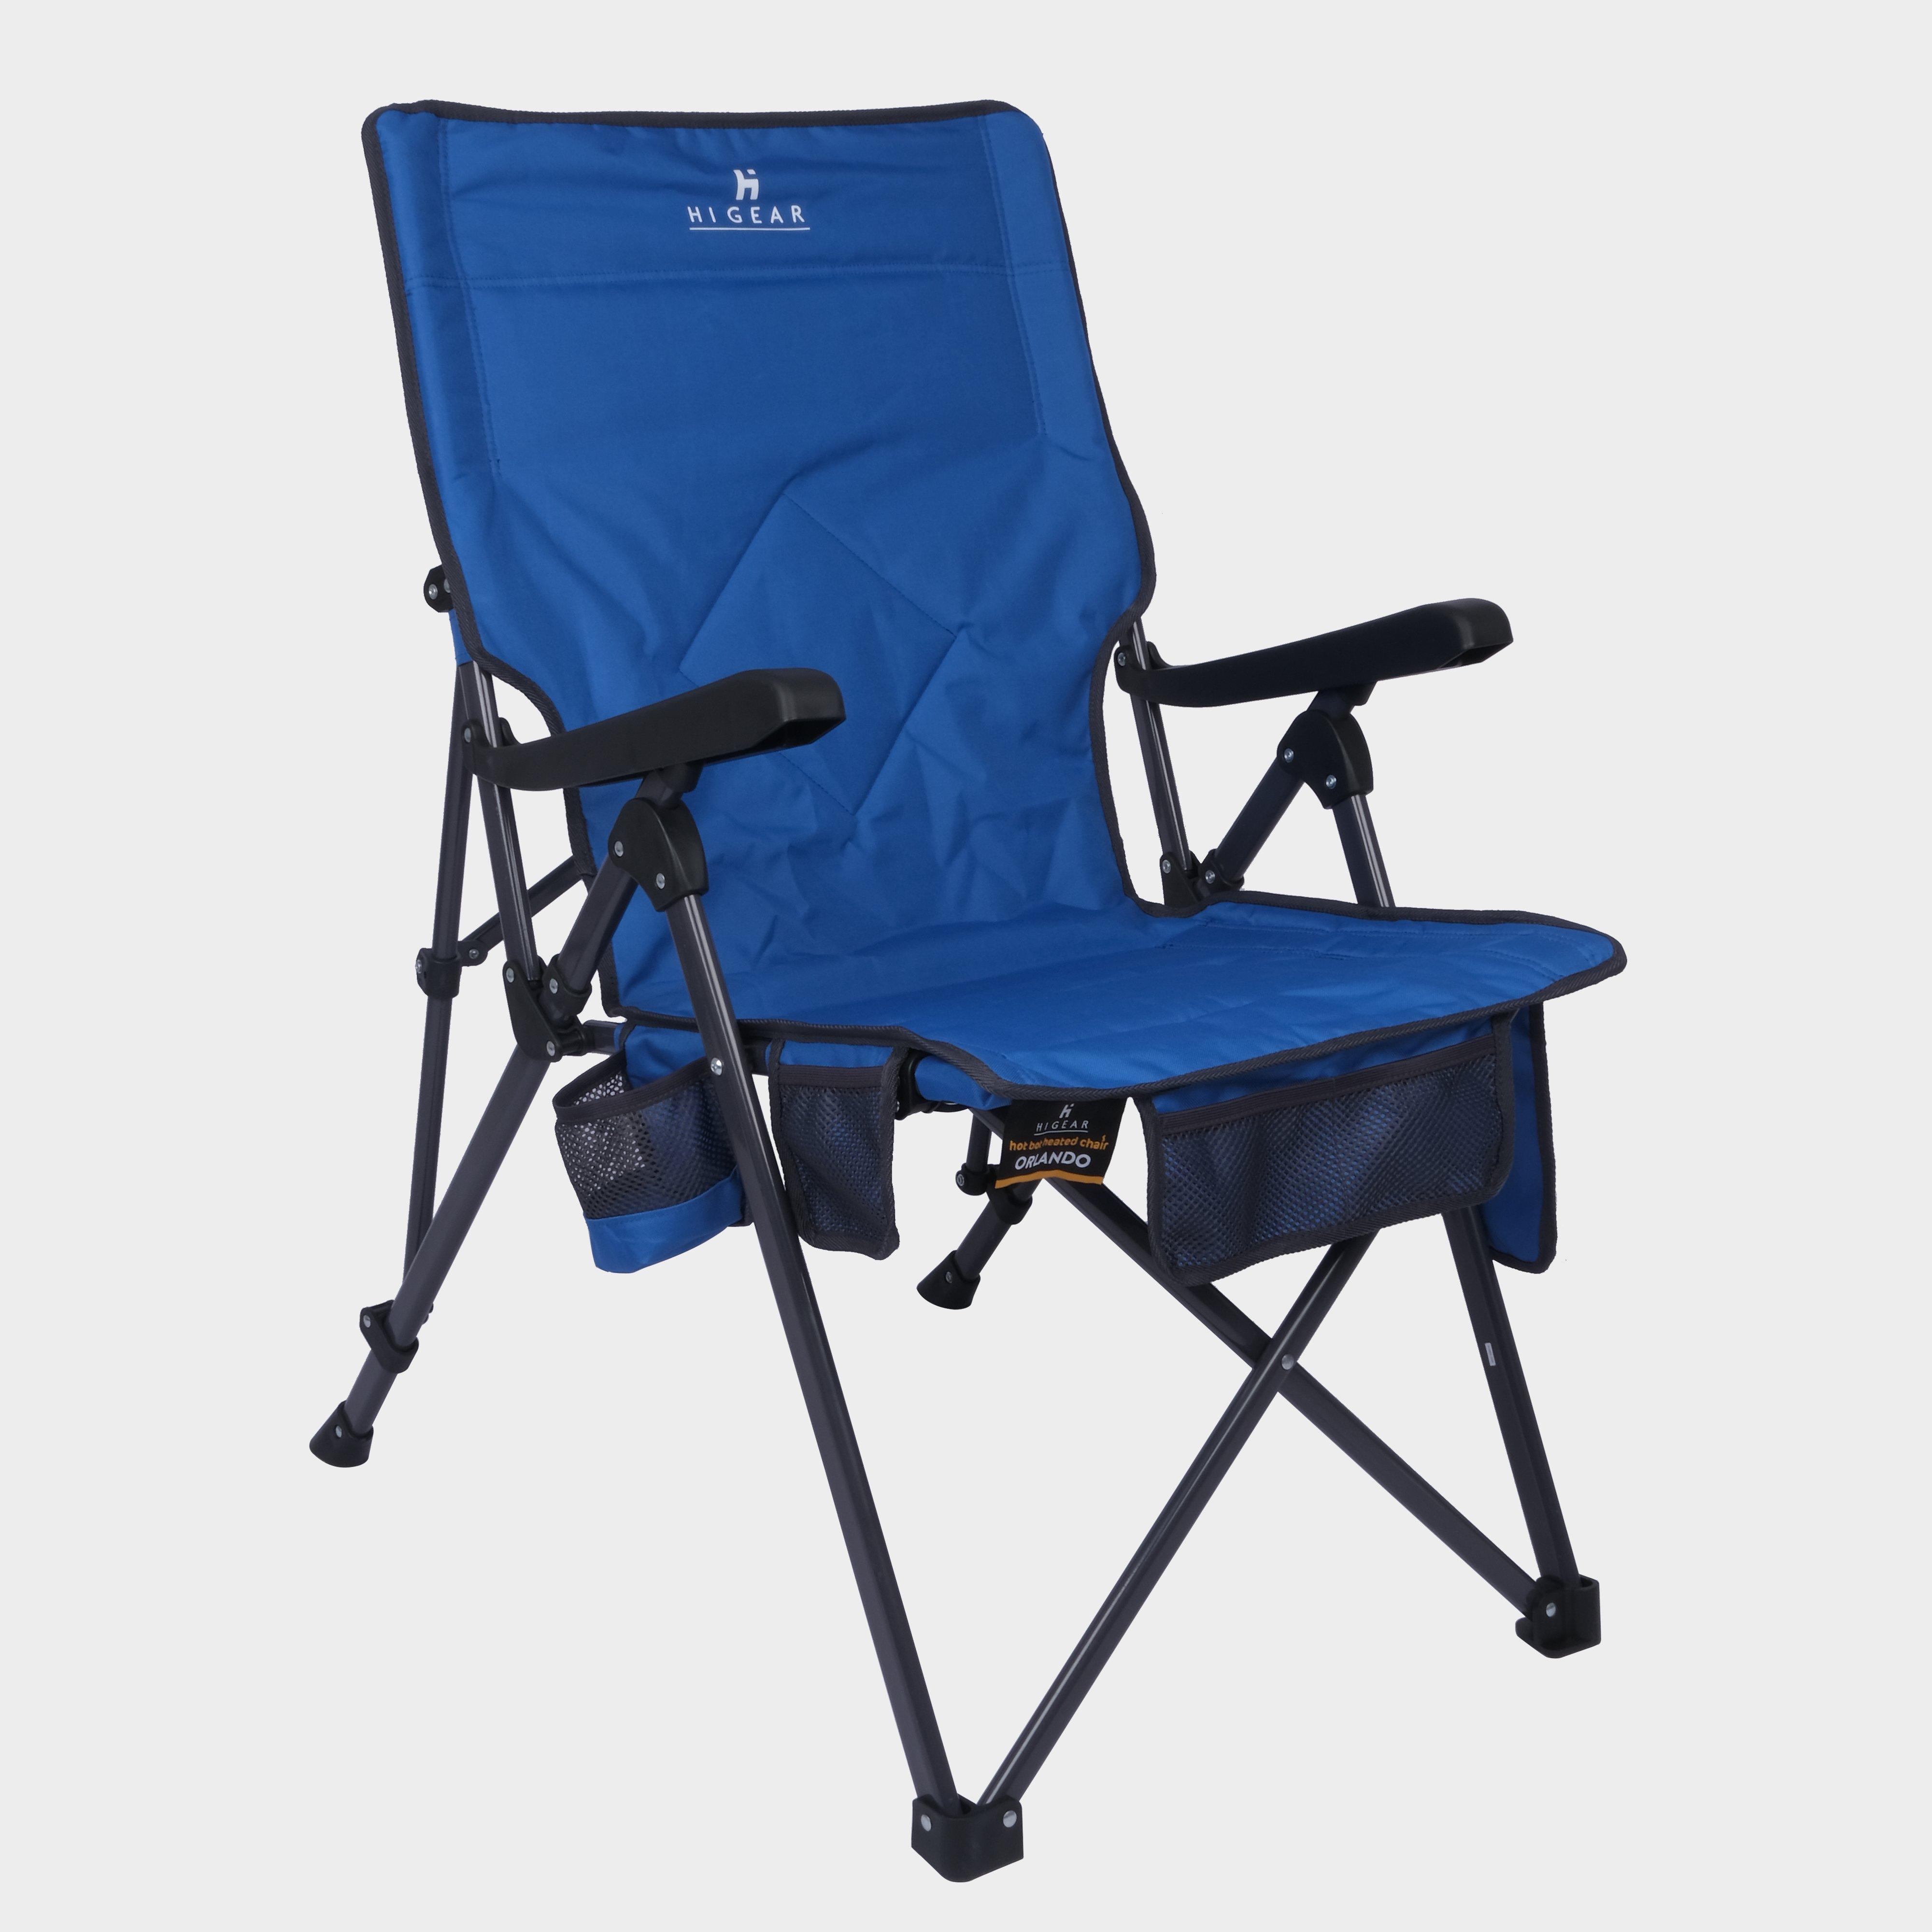 Hi-gear Orlando Heated Recliner Chair - Blue/blue  Blue/blue